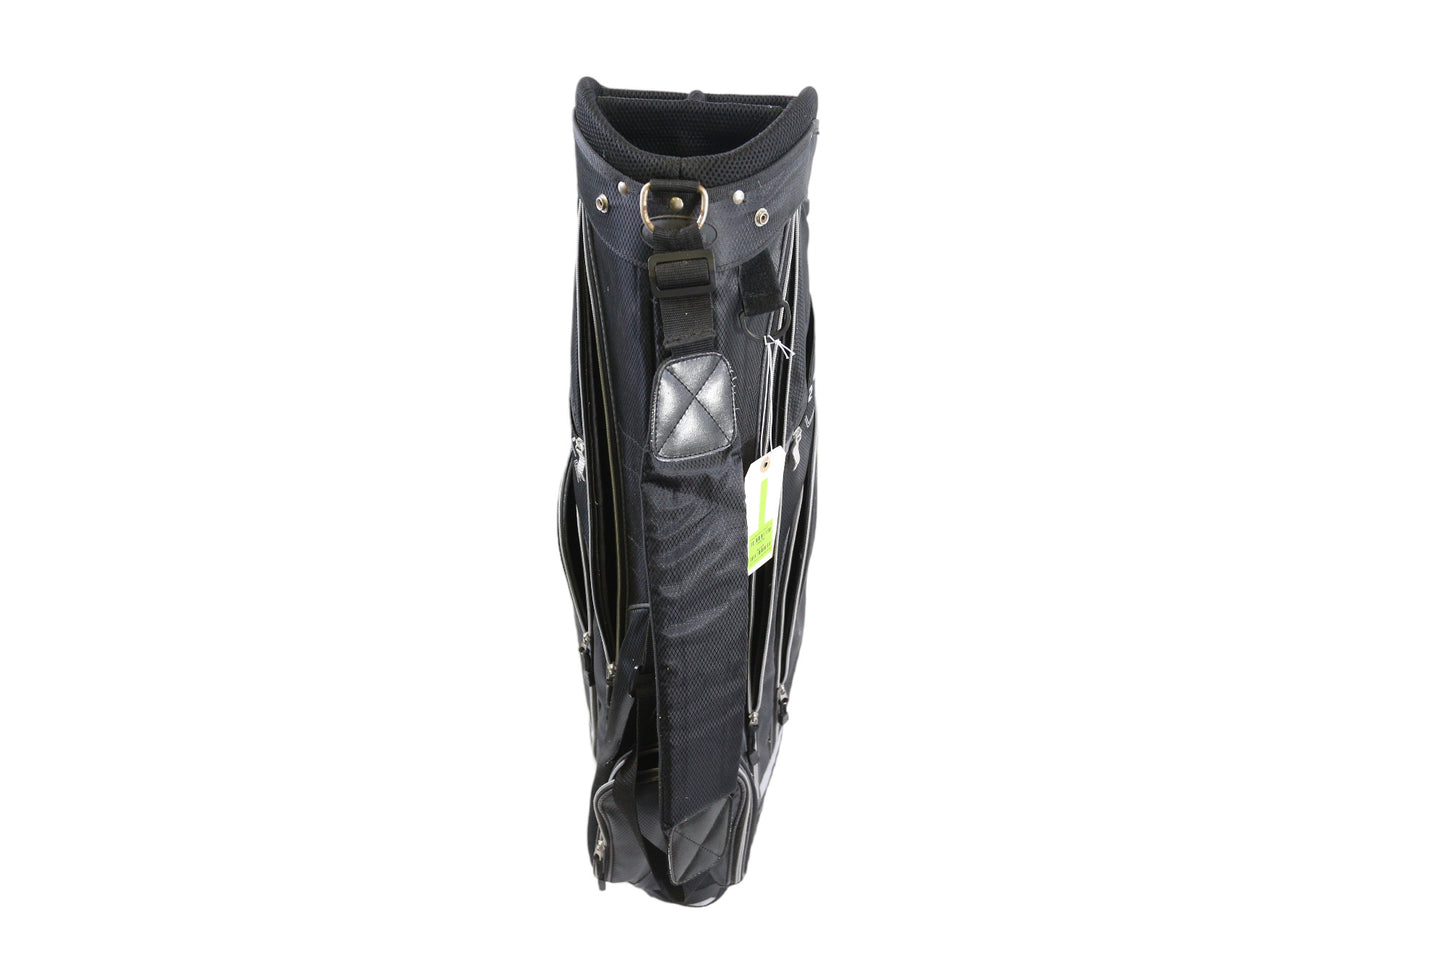 Wilson Black Cart Bag 5 Dividers 6 Pockets Shoulder Strap